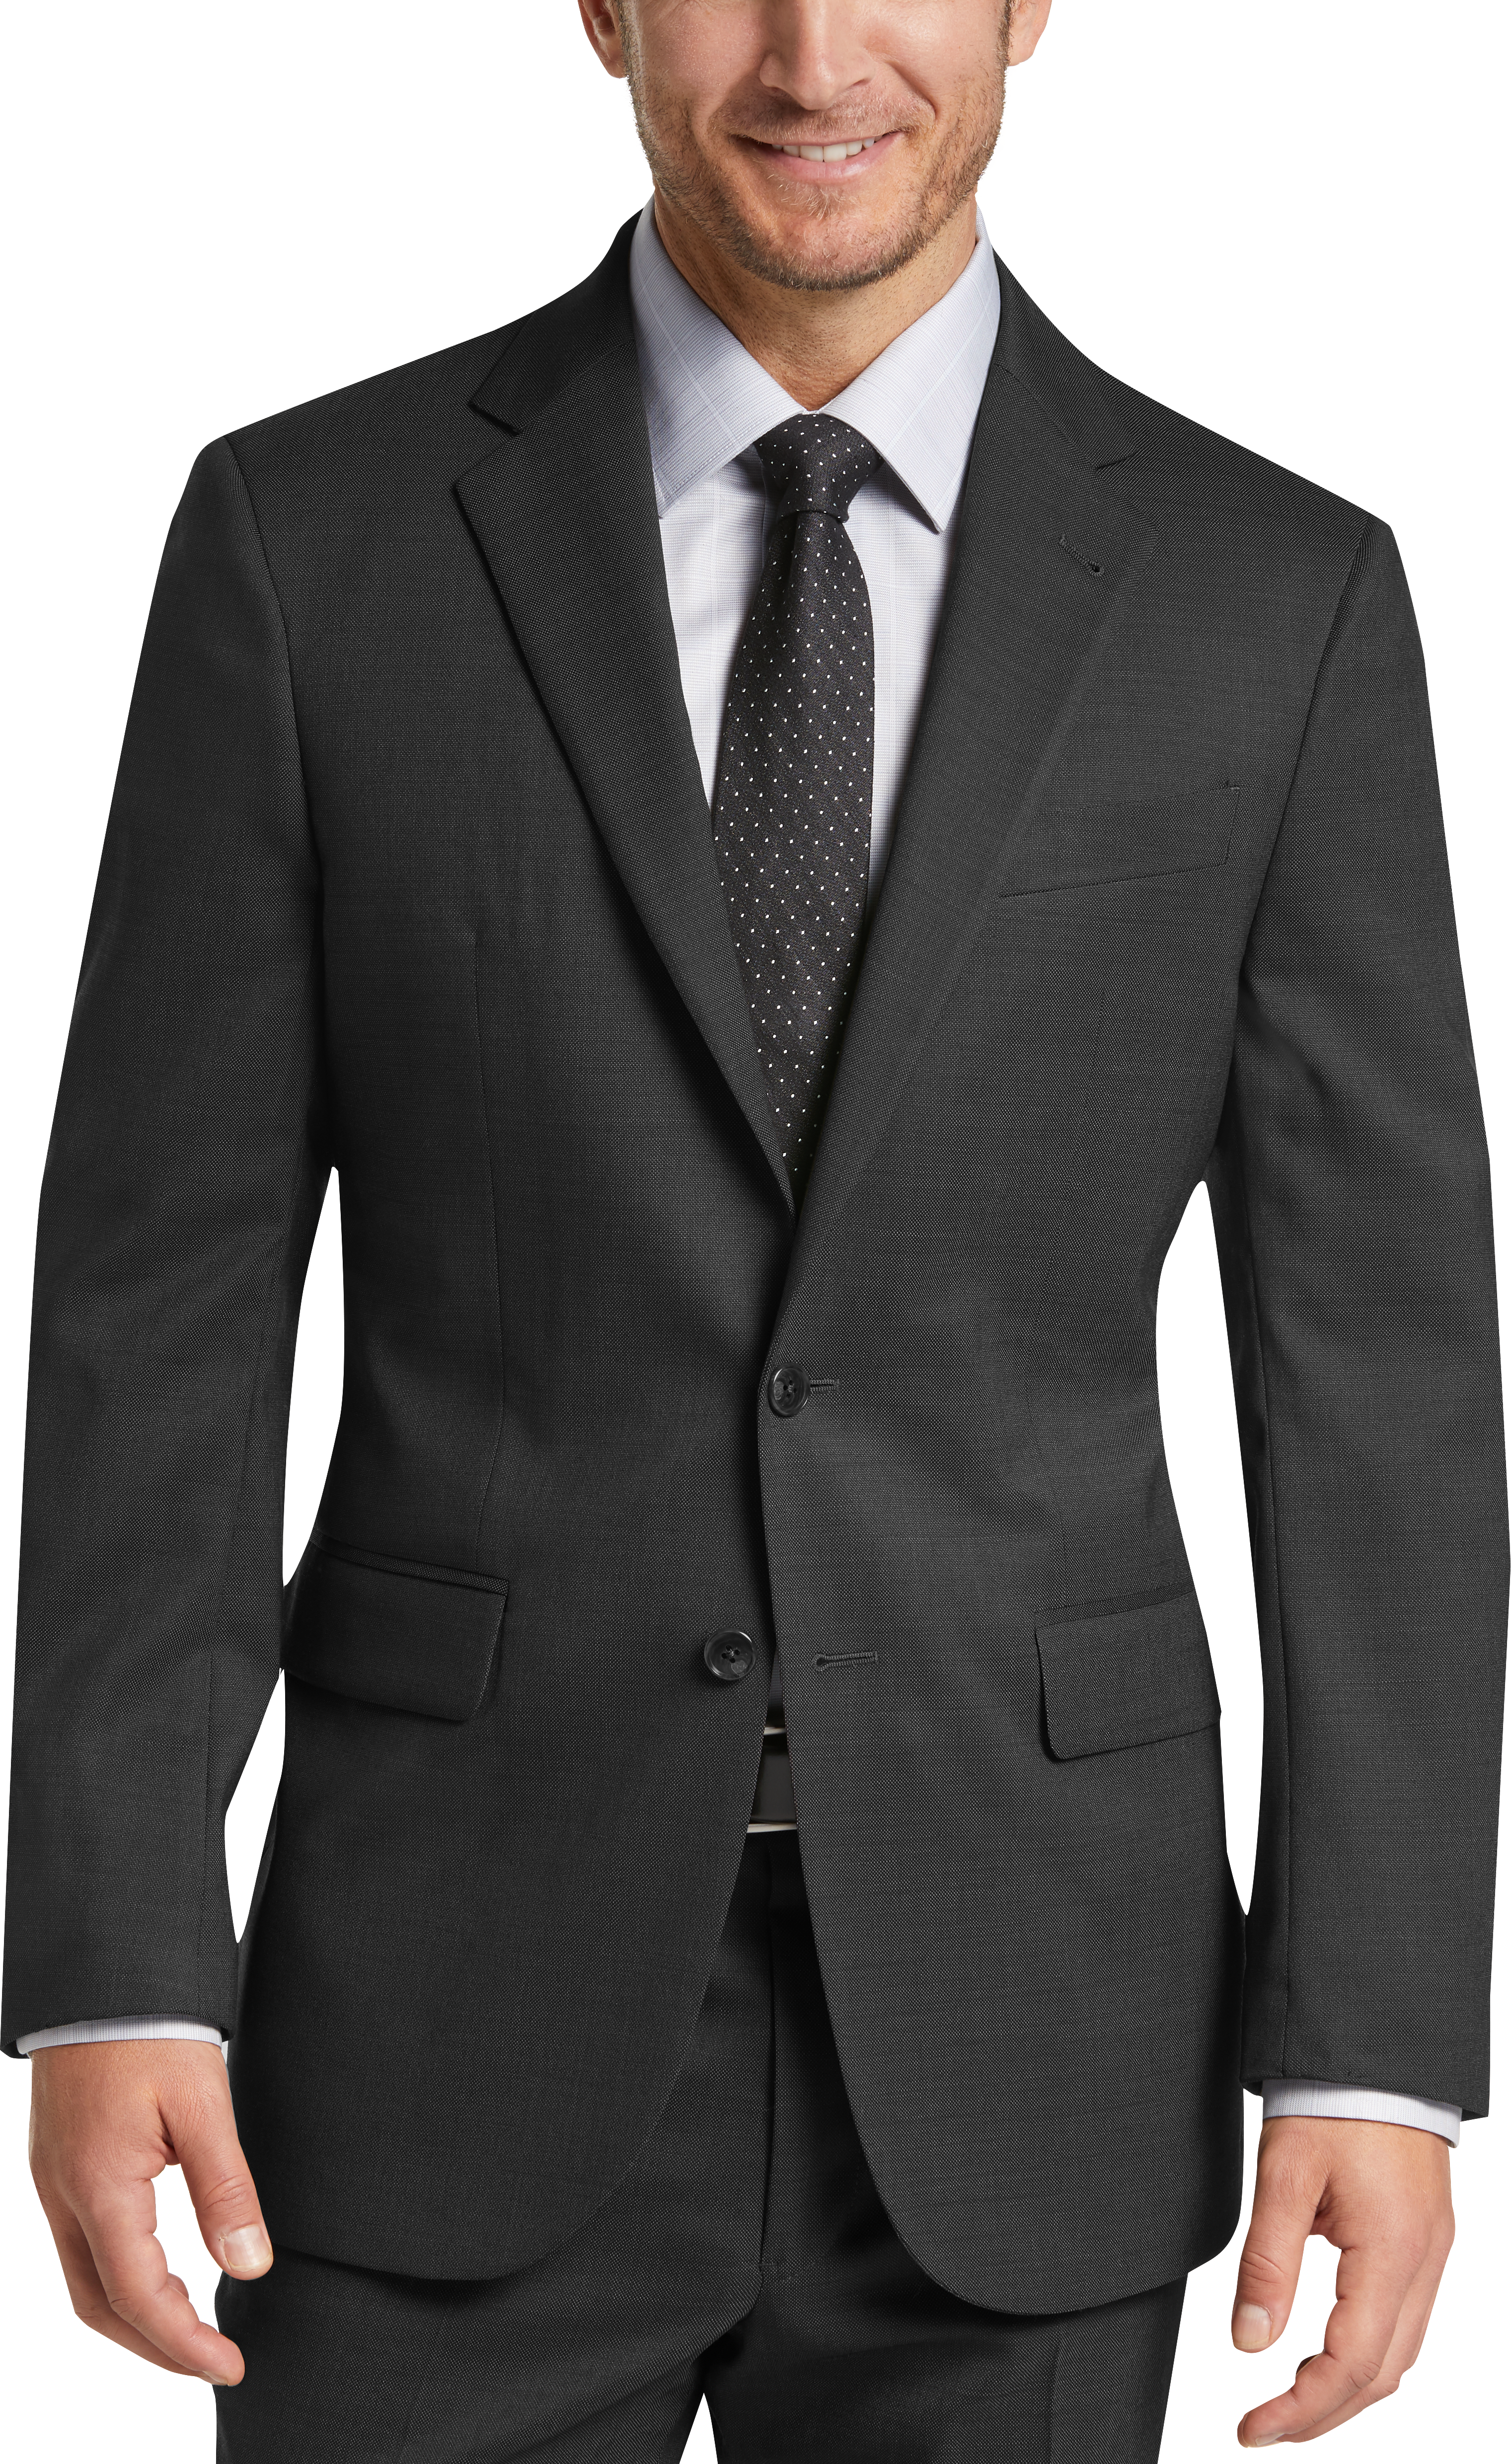 Mens Vested 3-Piece Suits, Suits - Joseph Abboud Tic Modern Fit Suit Separates, Charcoal - Men's Wearhouse